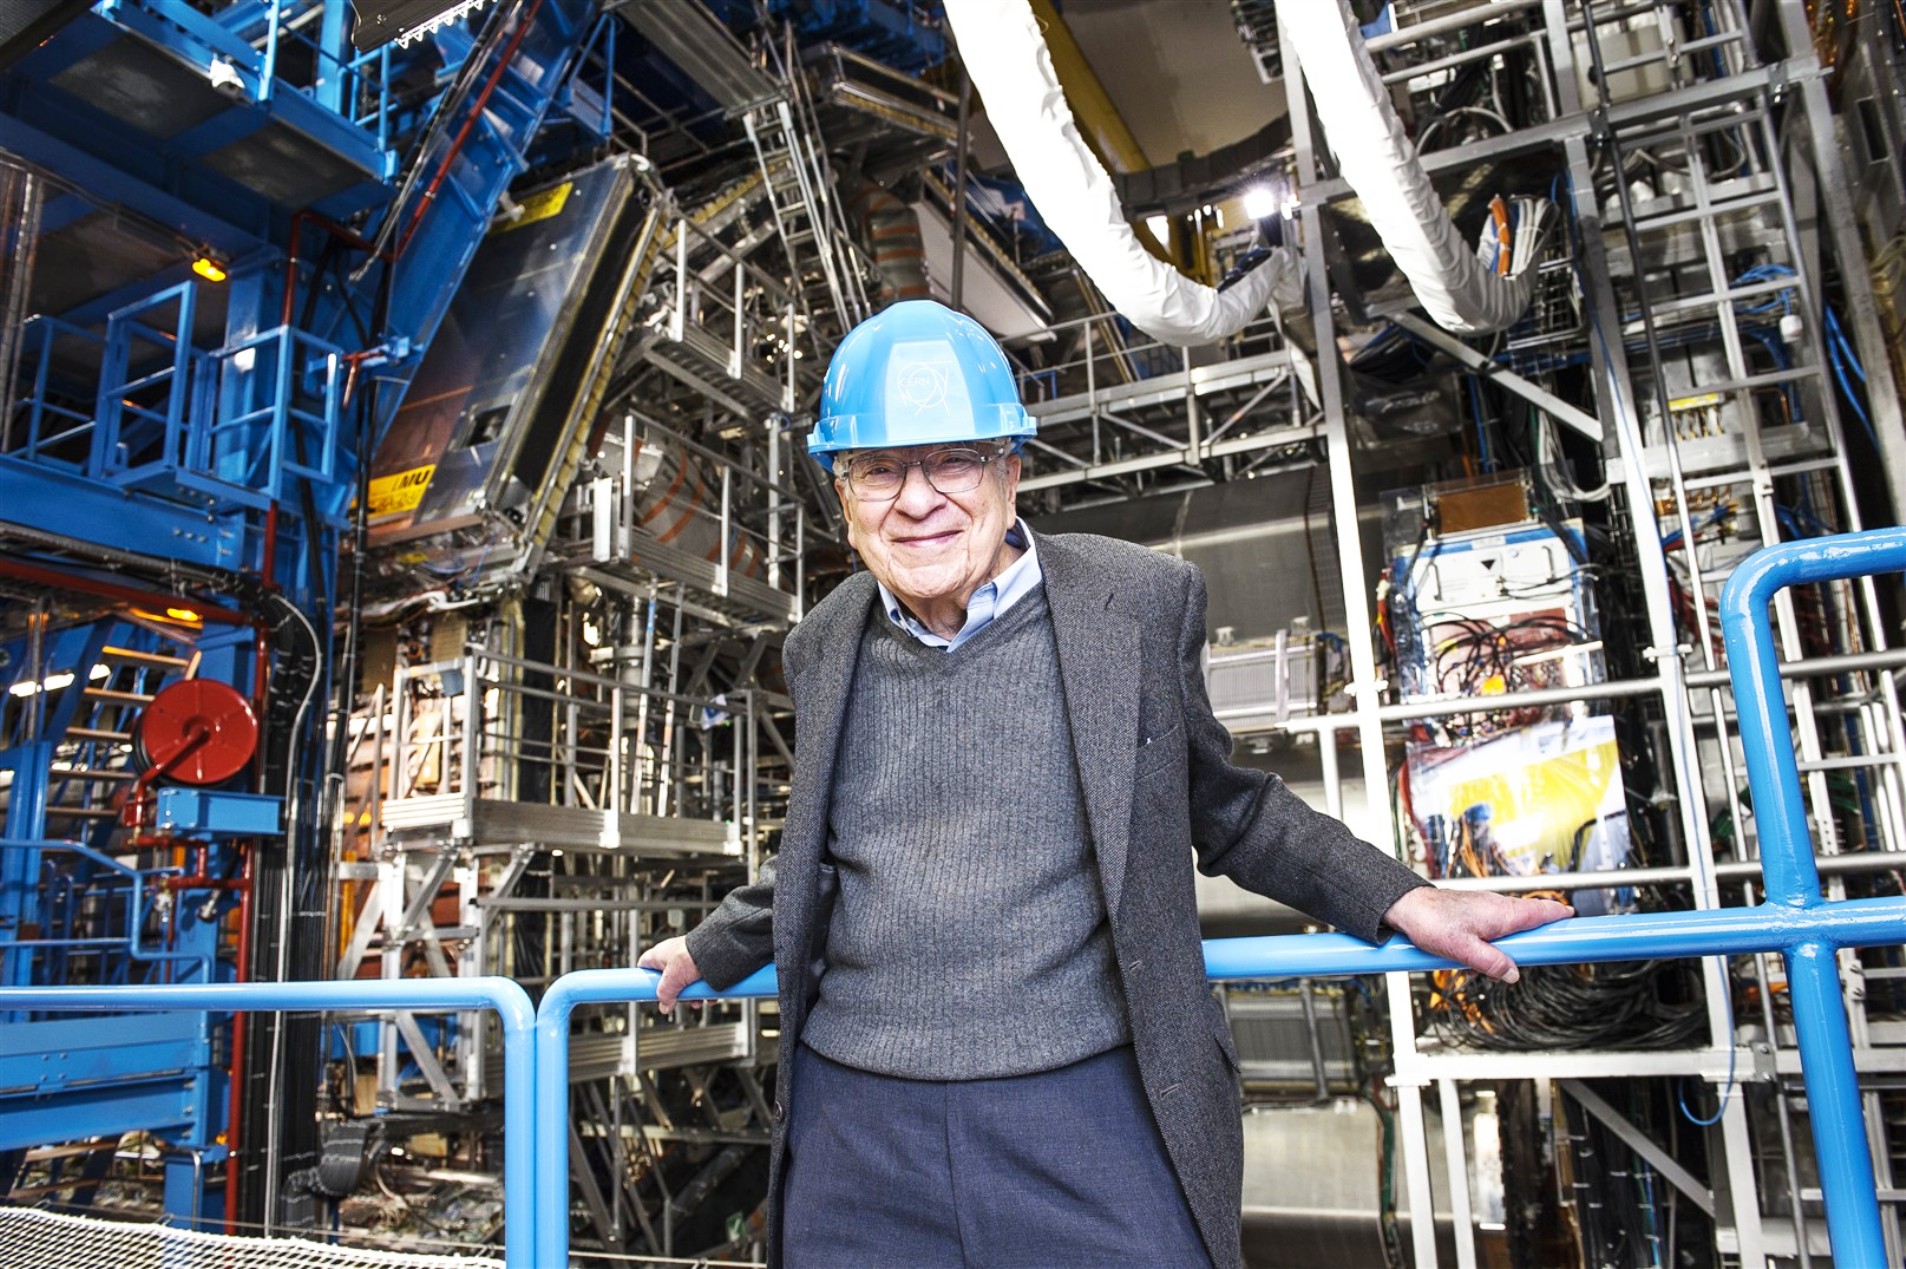 Murray Gell-Mann, l’un des pères de la théorie des quarks, en visite au Cern en janvier 2013. Le prix Nobel de physique se tient devant le détecteur Atlas. C’est l’un des principaux architectes du modèle standard des particules élémentaires. Ses travaux portent aussi sur la cosmologie quantique et il est à l’origine de l’institut de Santa Fe (Santa Fe Institute, ou SFI), un institut de recherche spécialisé dans l’étude des systèmes complexes. © Maximilien Brice, Cern